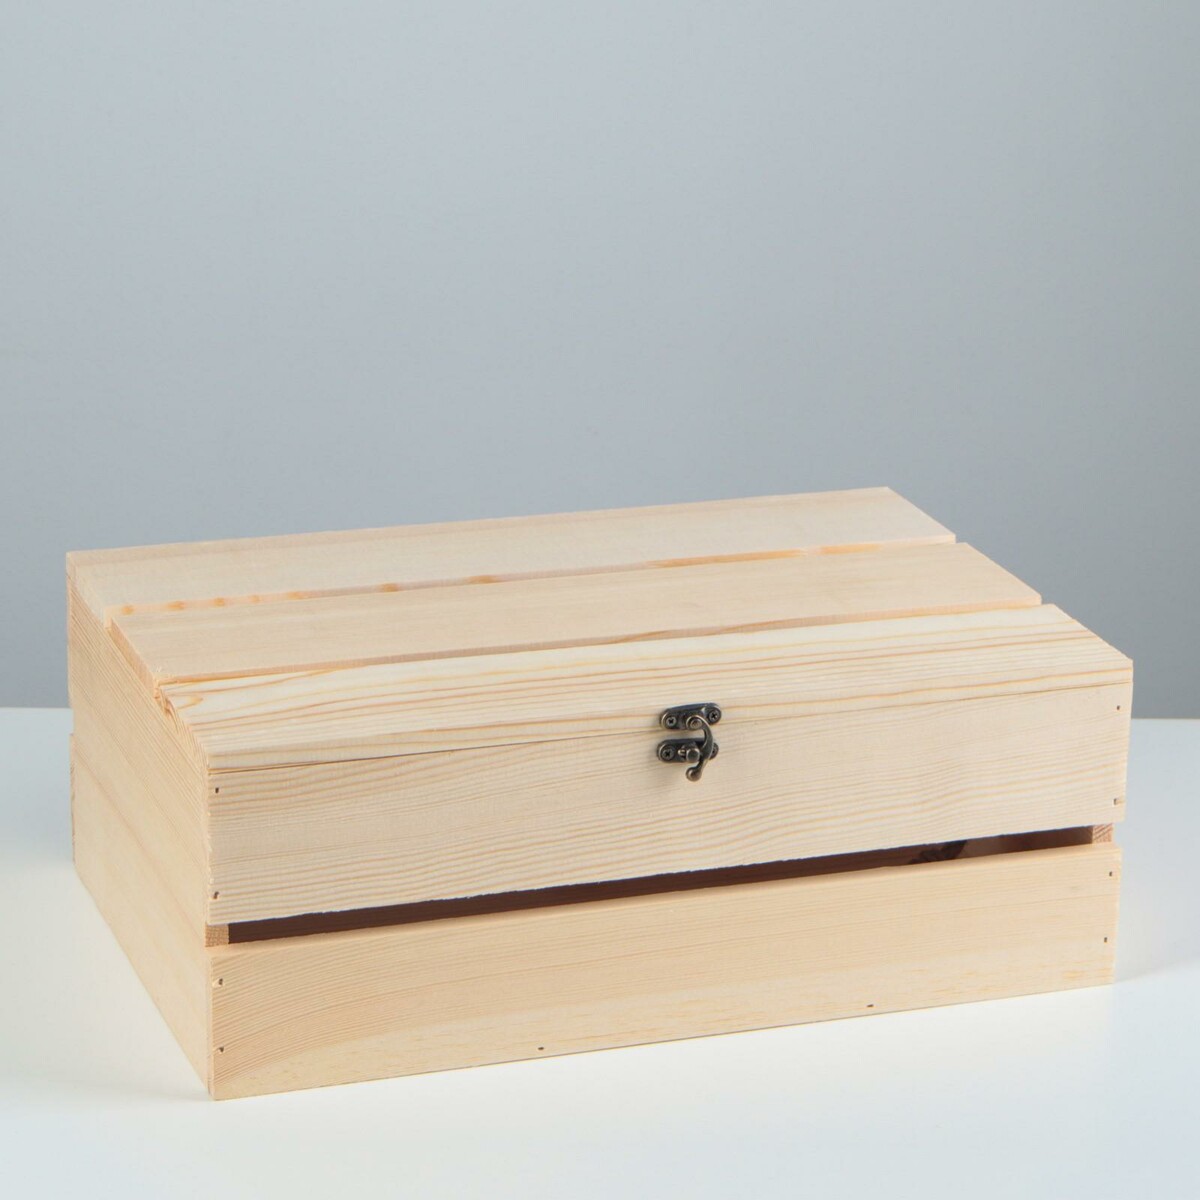 Ящик деревянный 35×23×13 см подарочный с реечной крышкой на петельках с замком подарочный ящик 25×25×11 см деревянный крышка оргстекло 3 мм обжиг